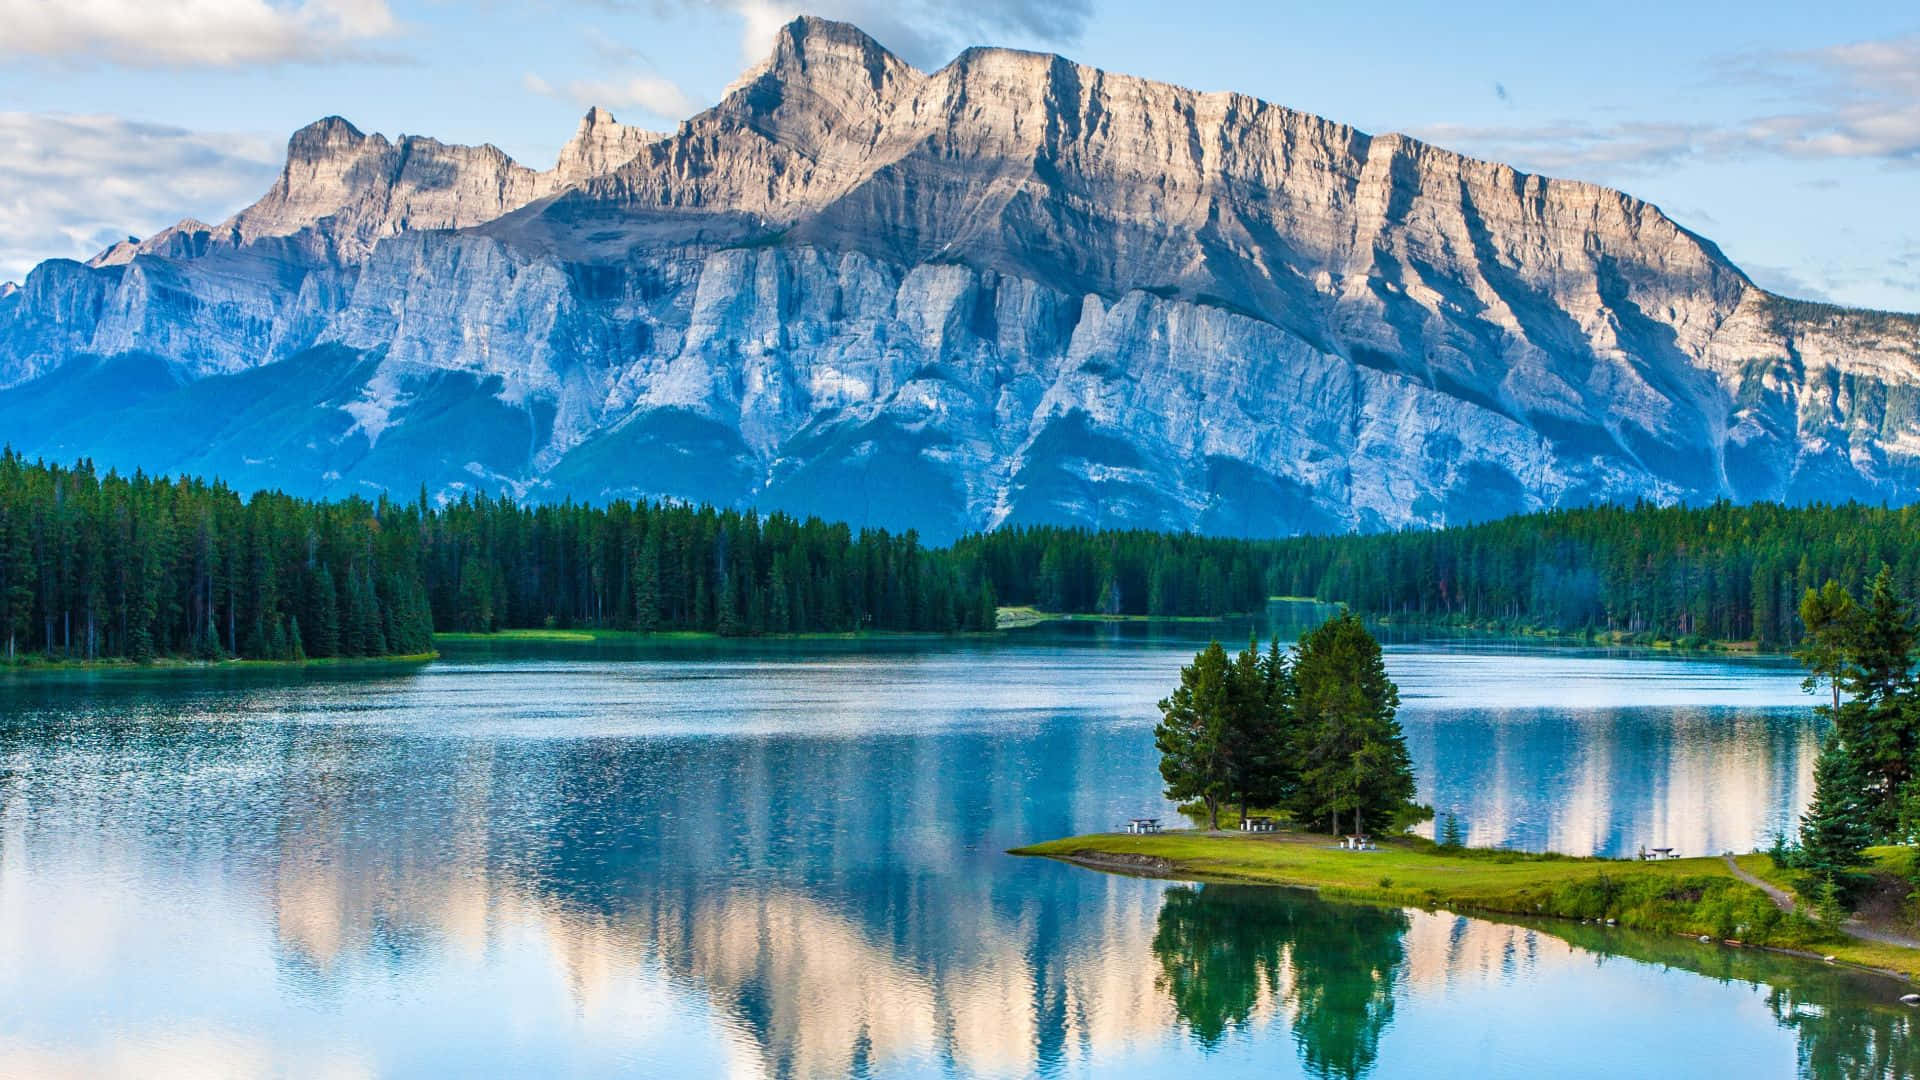 Hình nền Banff National Park đẹp như tranh vẽ - một khu vườn quốc gia hoang sơ với cảnh quan đầy hoang dã, các danh lam thắng cảnh tự nhiên tuyệt đẹp cùng với những hồ nước trong xanh và núi non cao đổ bóng. Nhấn chuột ngay để truy cập vào hình ảnh độ phân giải cao hơn.